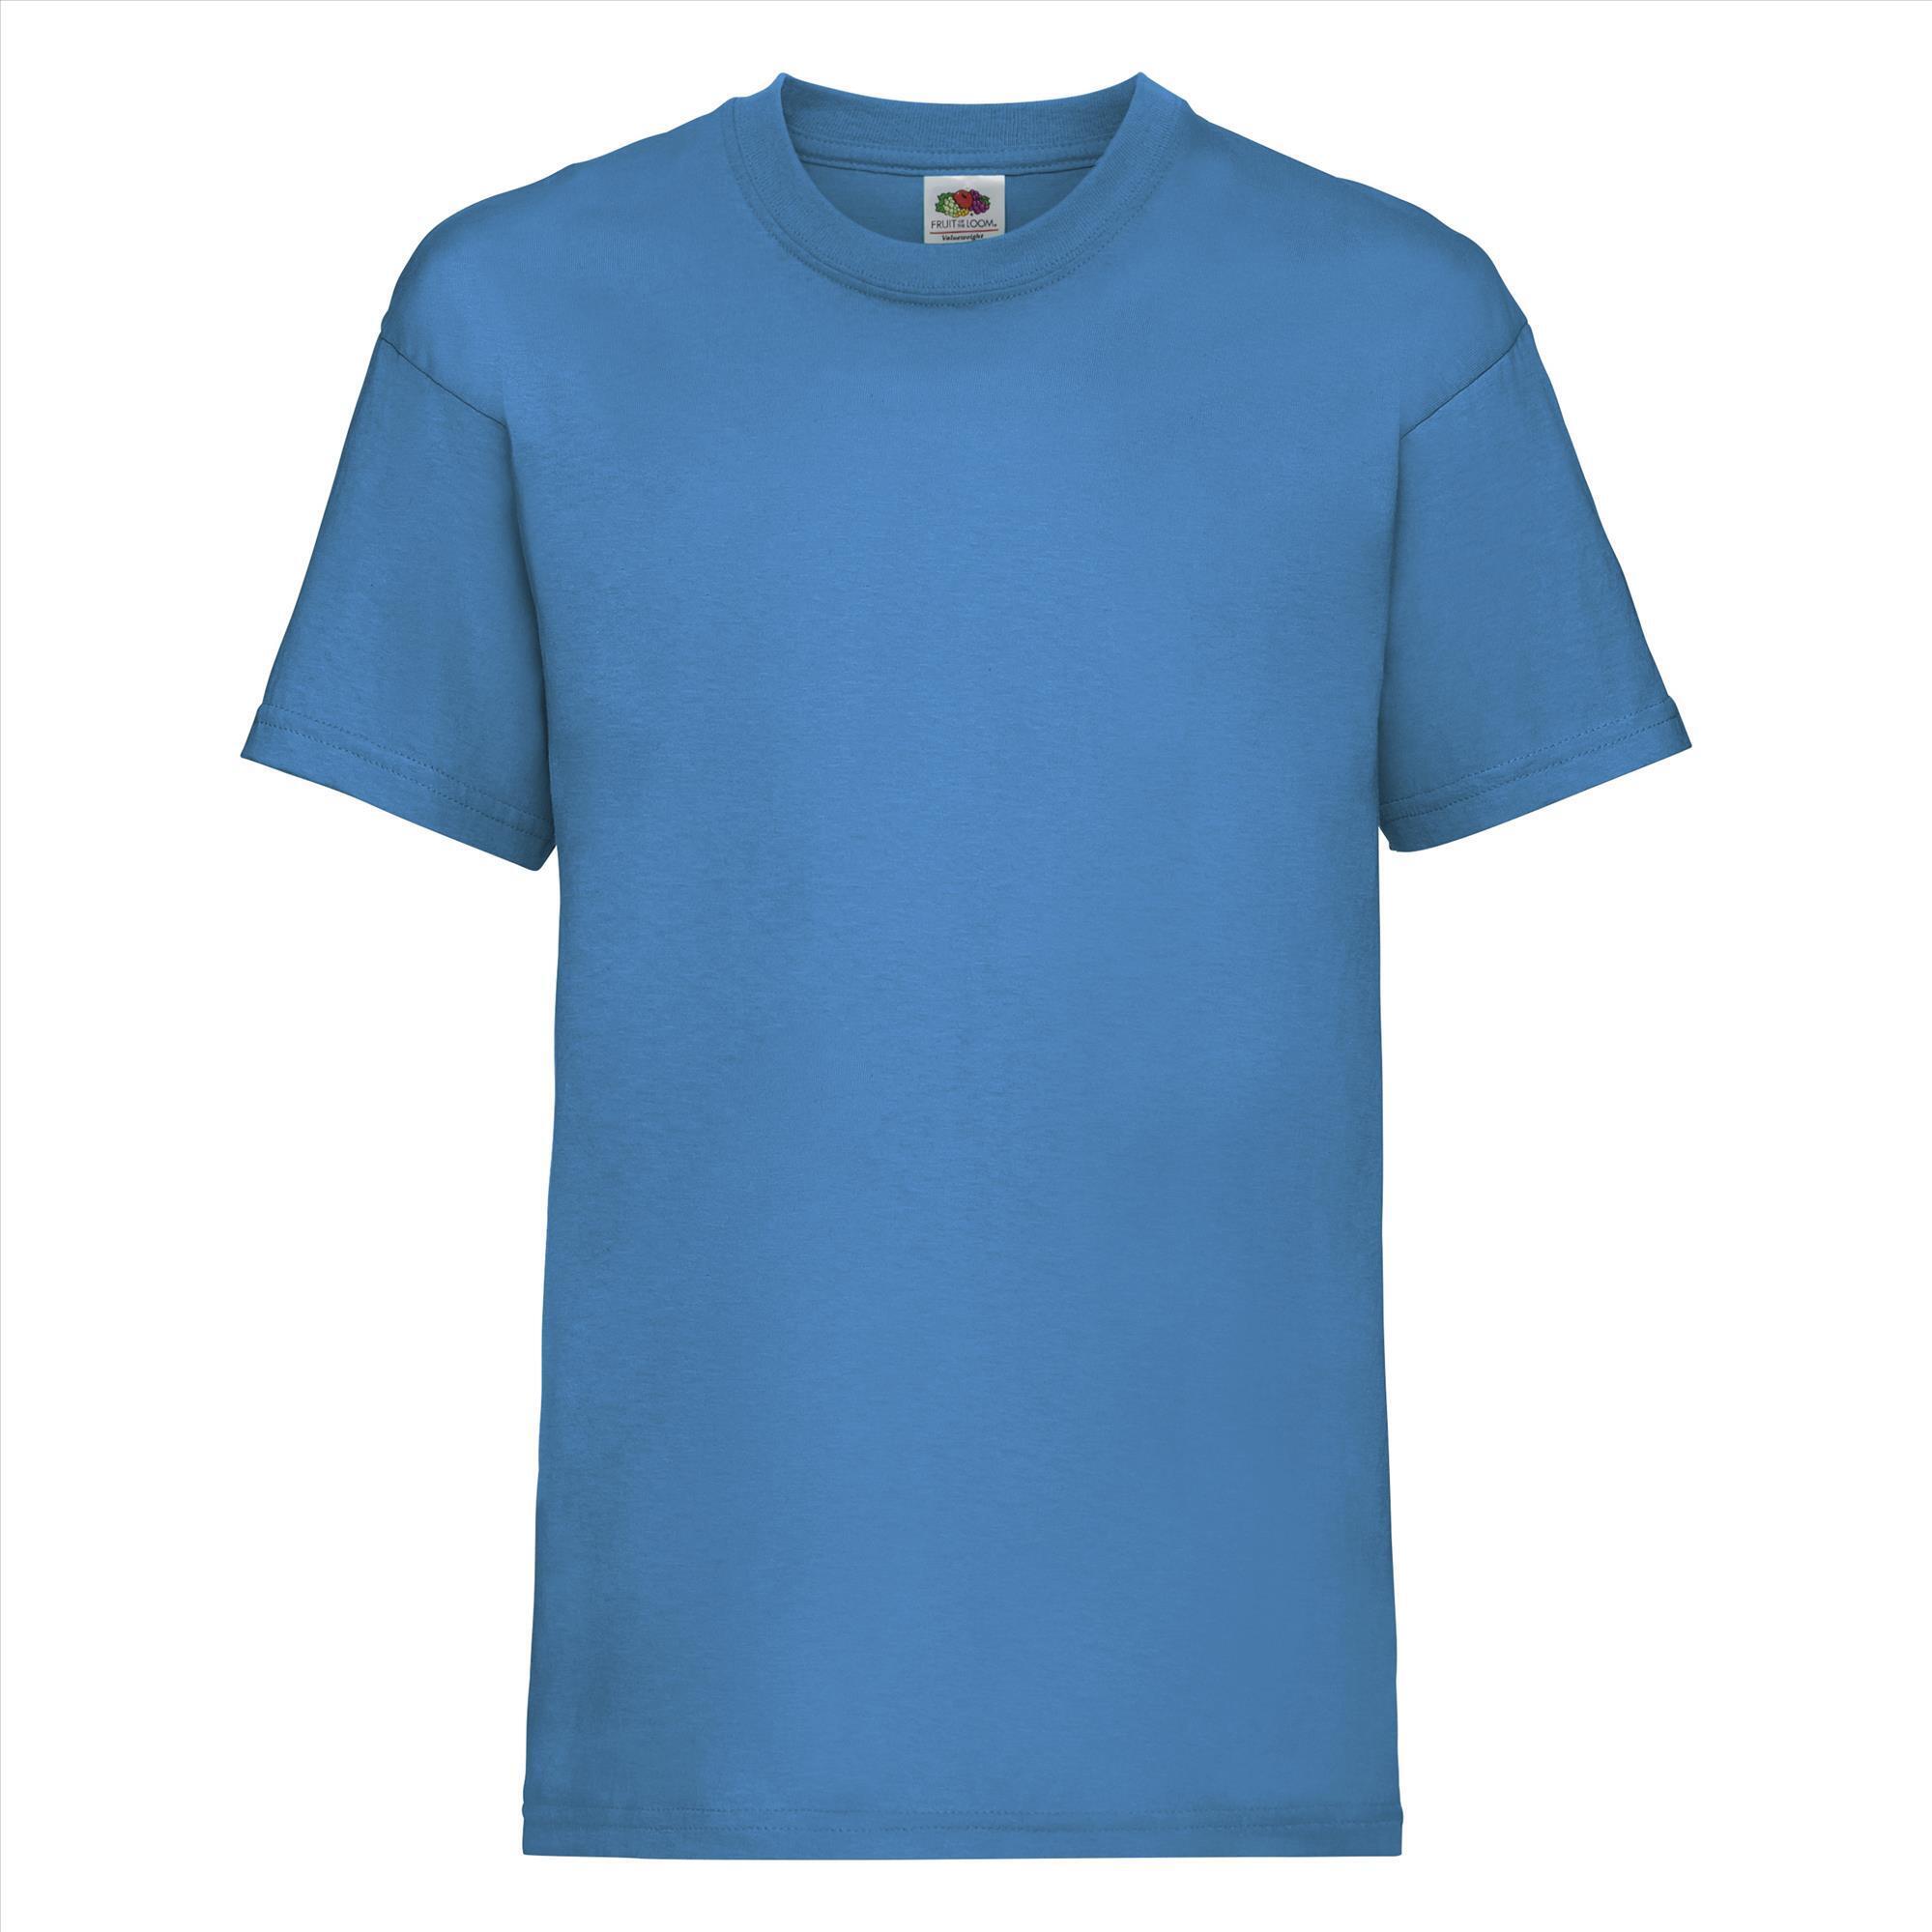 Gepersonaliseerde Kinder T-shirt azuur blauw Kinderkleding bedrukken